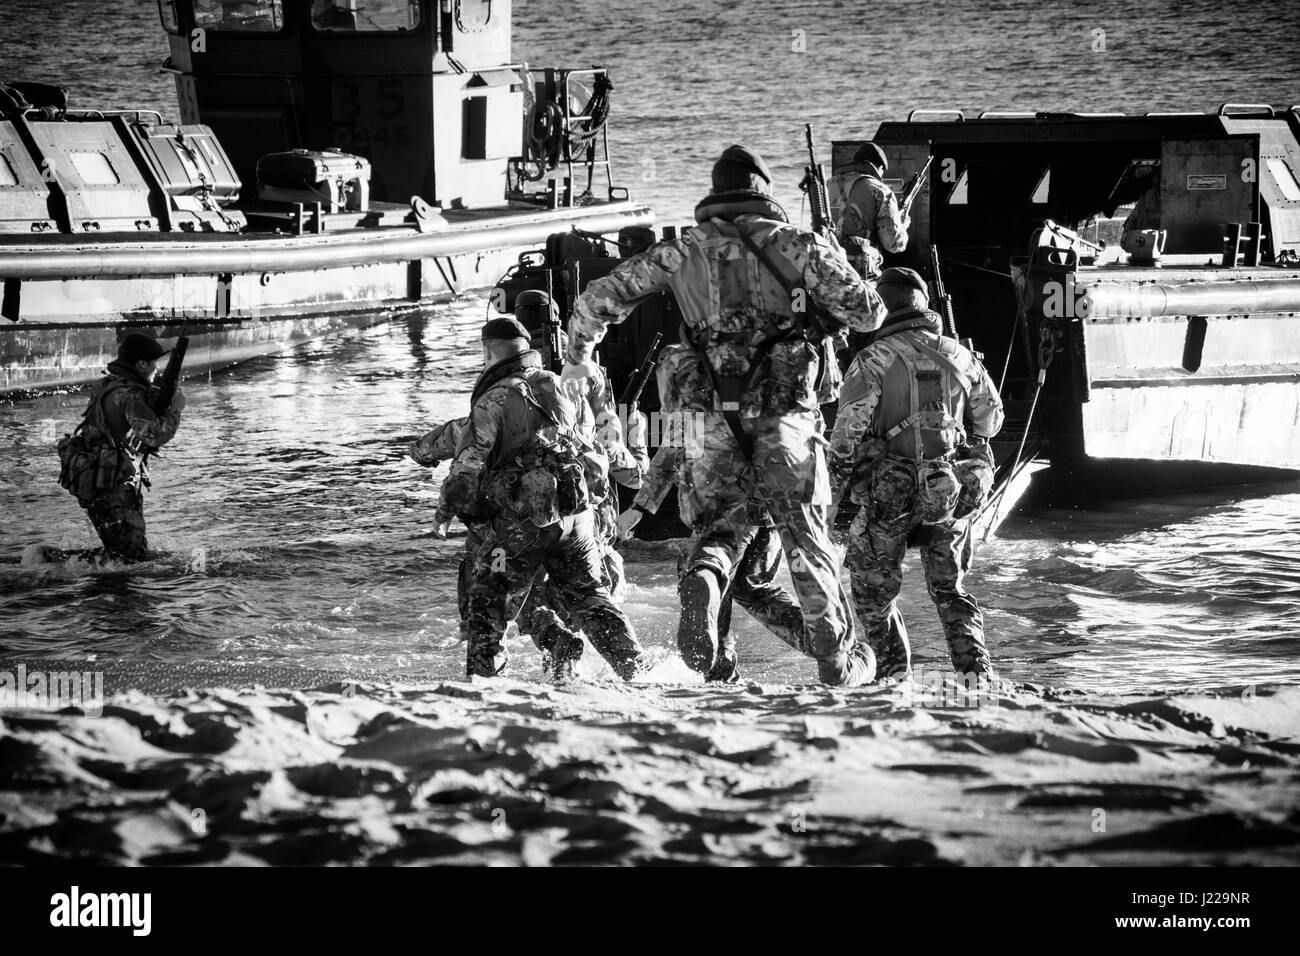 Royal Marines débarquements amphibies à l'Eastern Beach à Gibraltar. Photographe Stephen Ignacio à l'Eastern Beach, Gibraltar. La photographie noir et blanc Banque D'Images